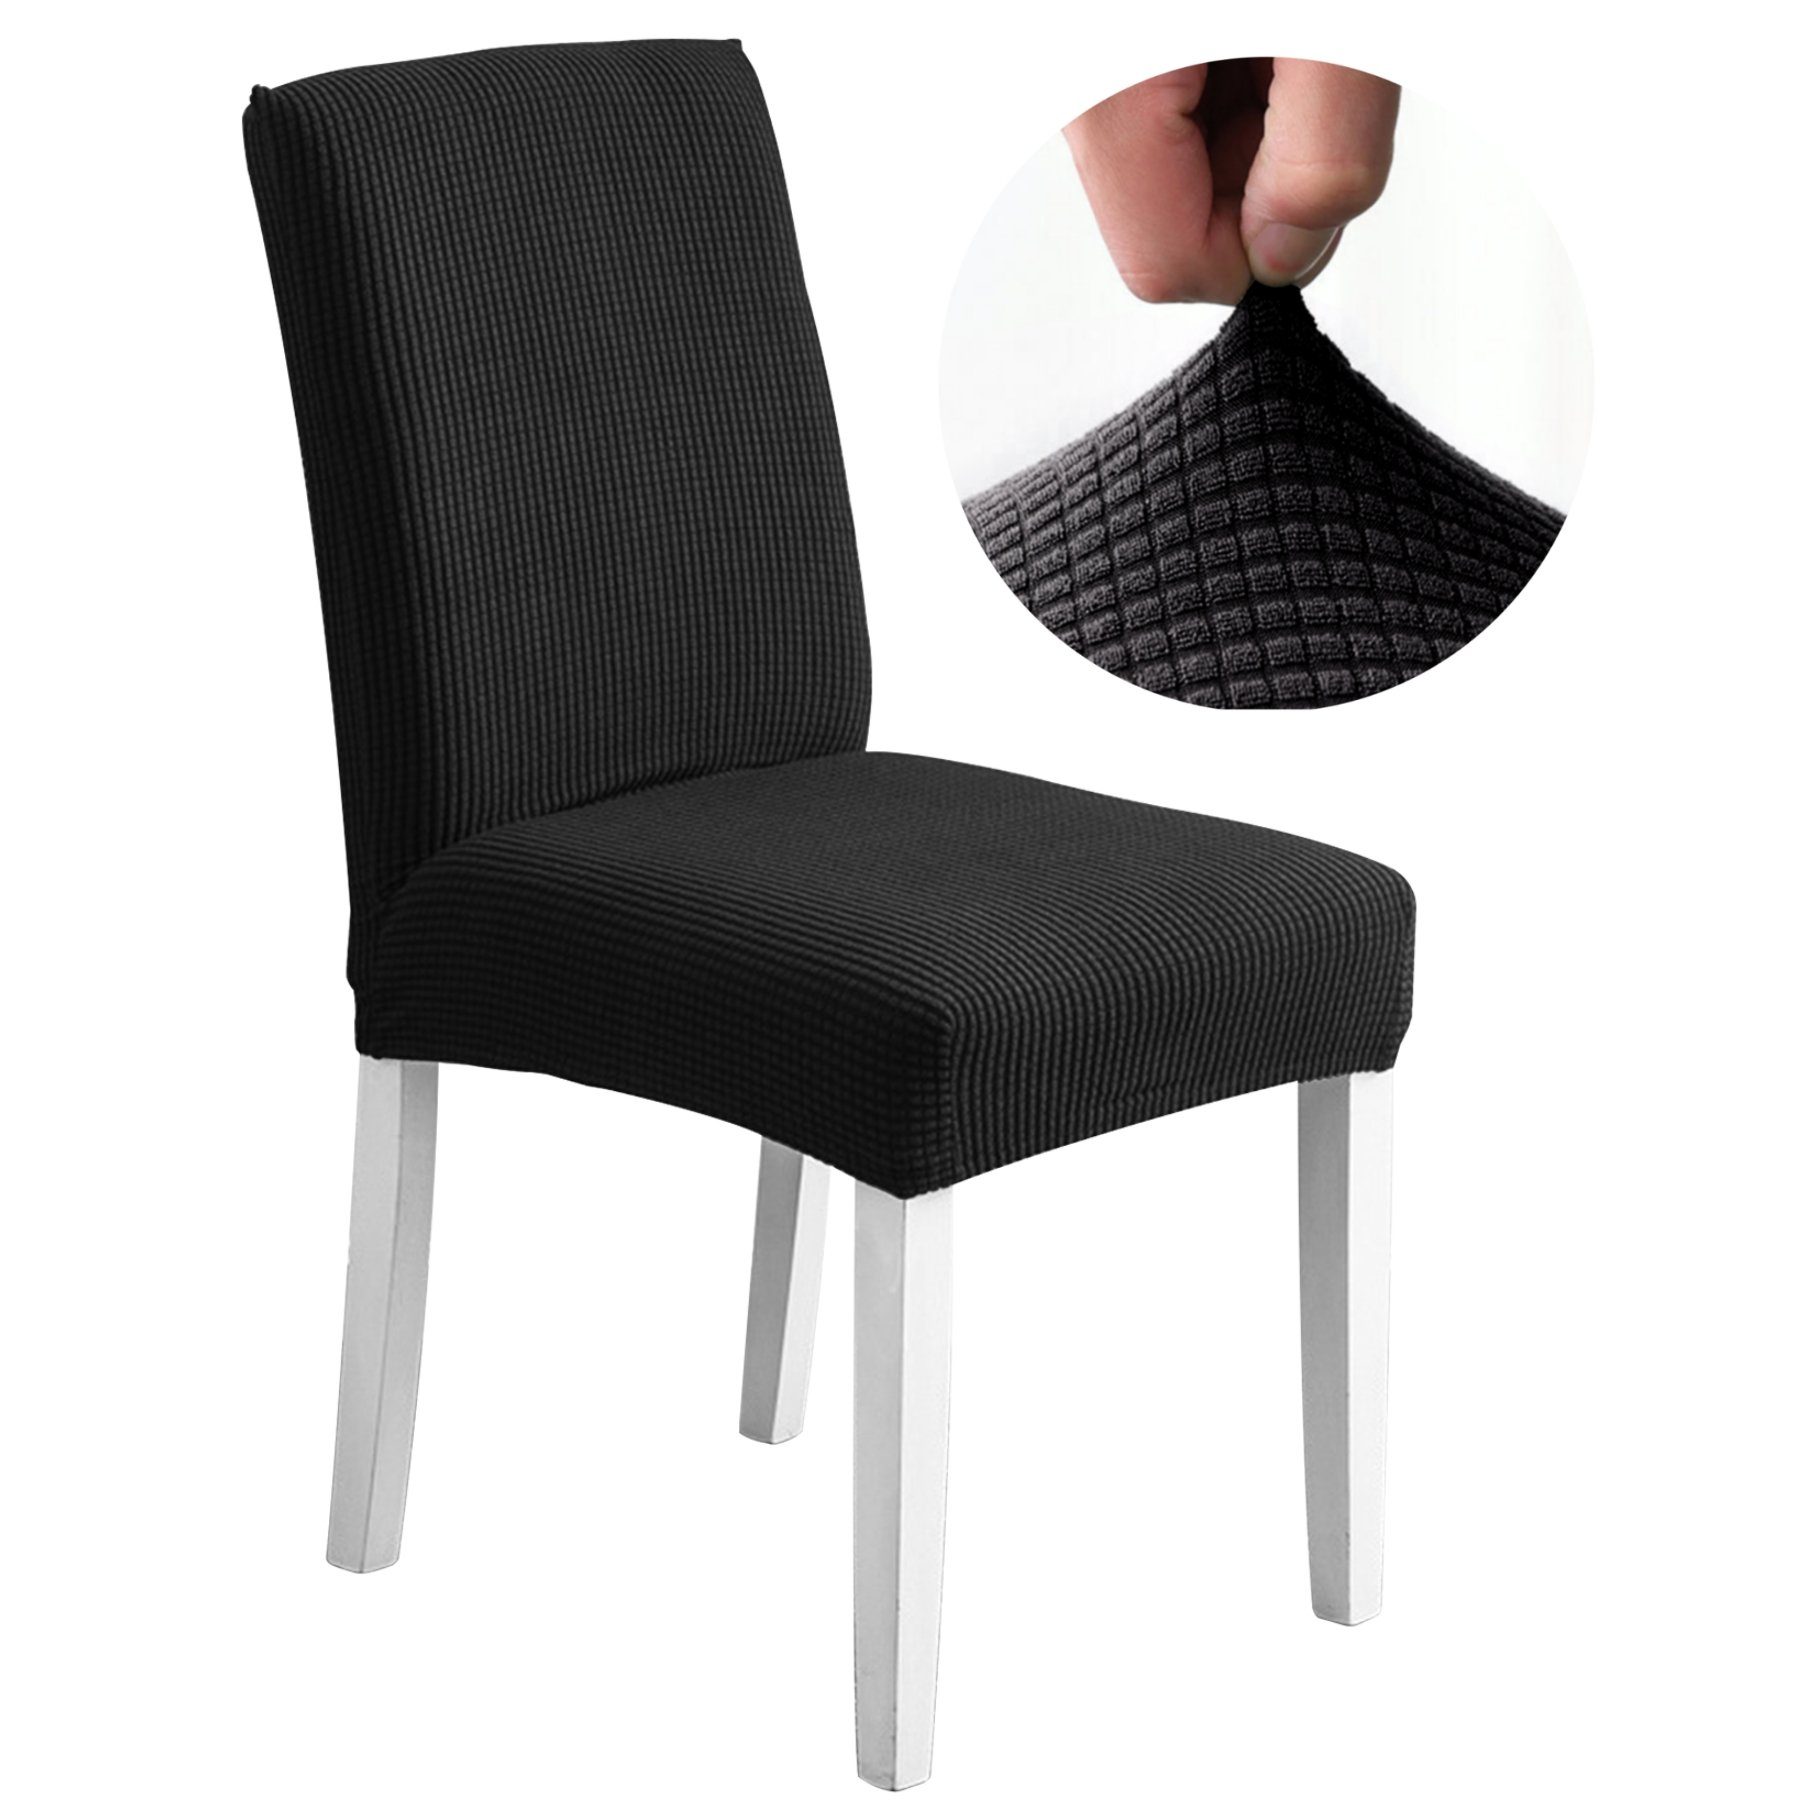 Abnehmbare Stuhlbezug Stühle, MULISOFT, Sitzflächenhusse Hussen Stretch für Stuhlhussen, mit schwarz-M Gummiband Waschbar